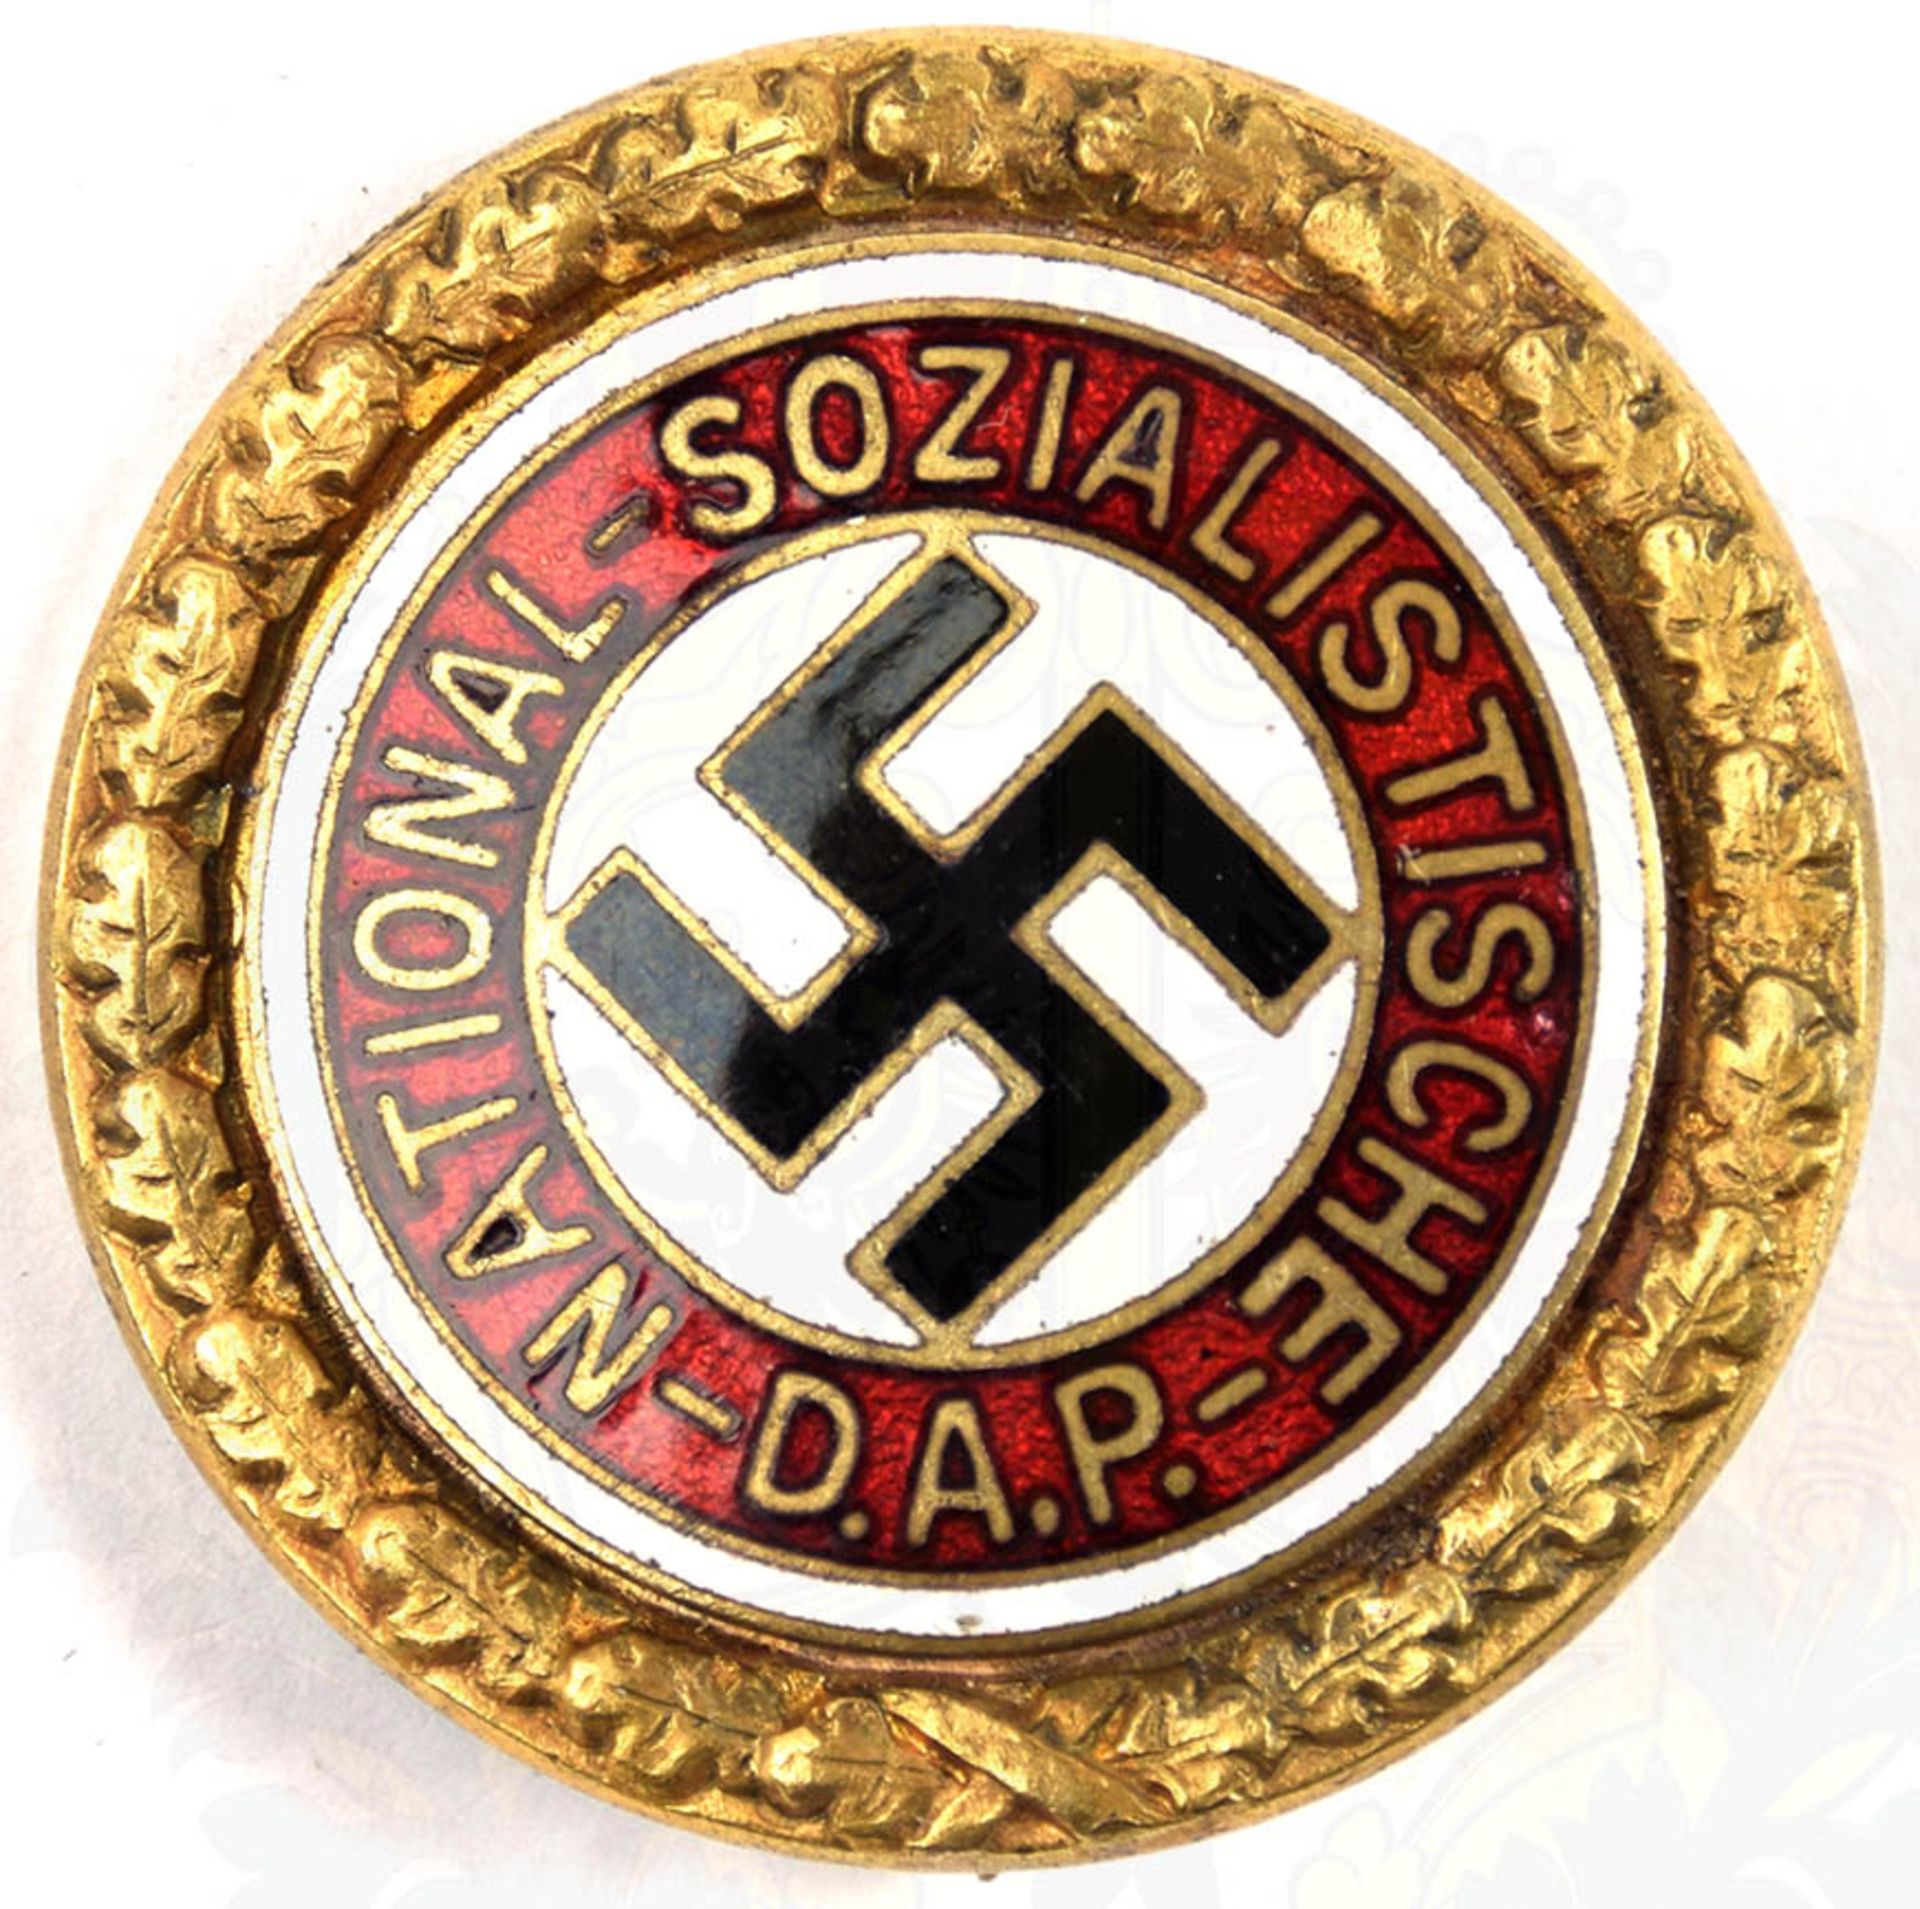 GOLDENES EHRENZEICHEN DER NSDAP, Sammleranfertigung/Repro, Buntmetall/vergld. u. emaill., rs. - Bild 2 aus 6